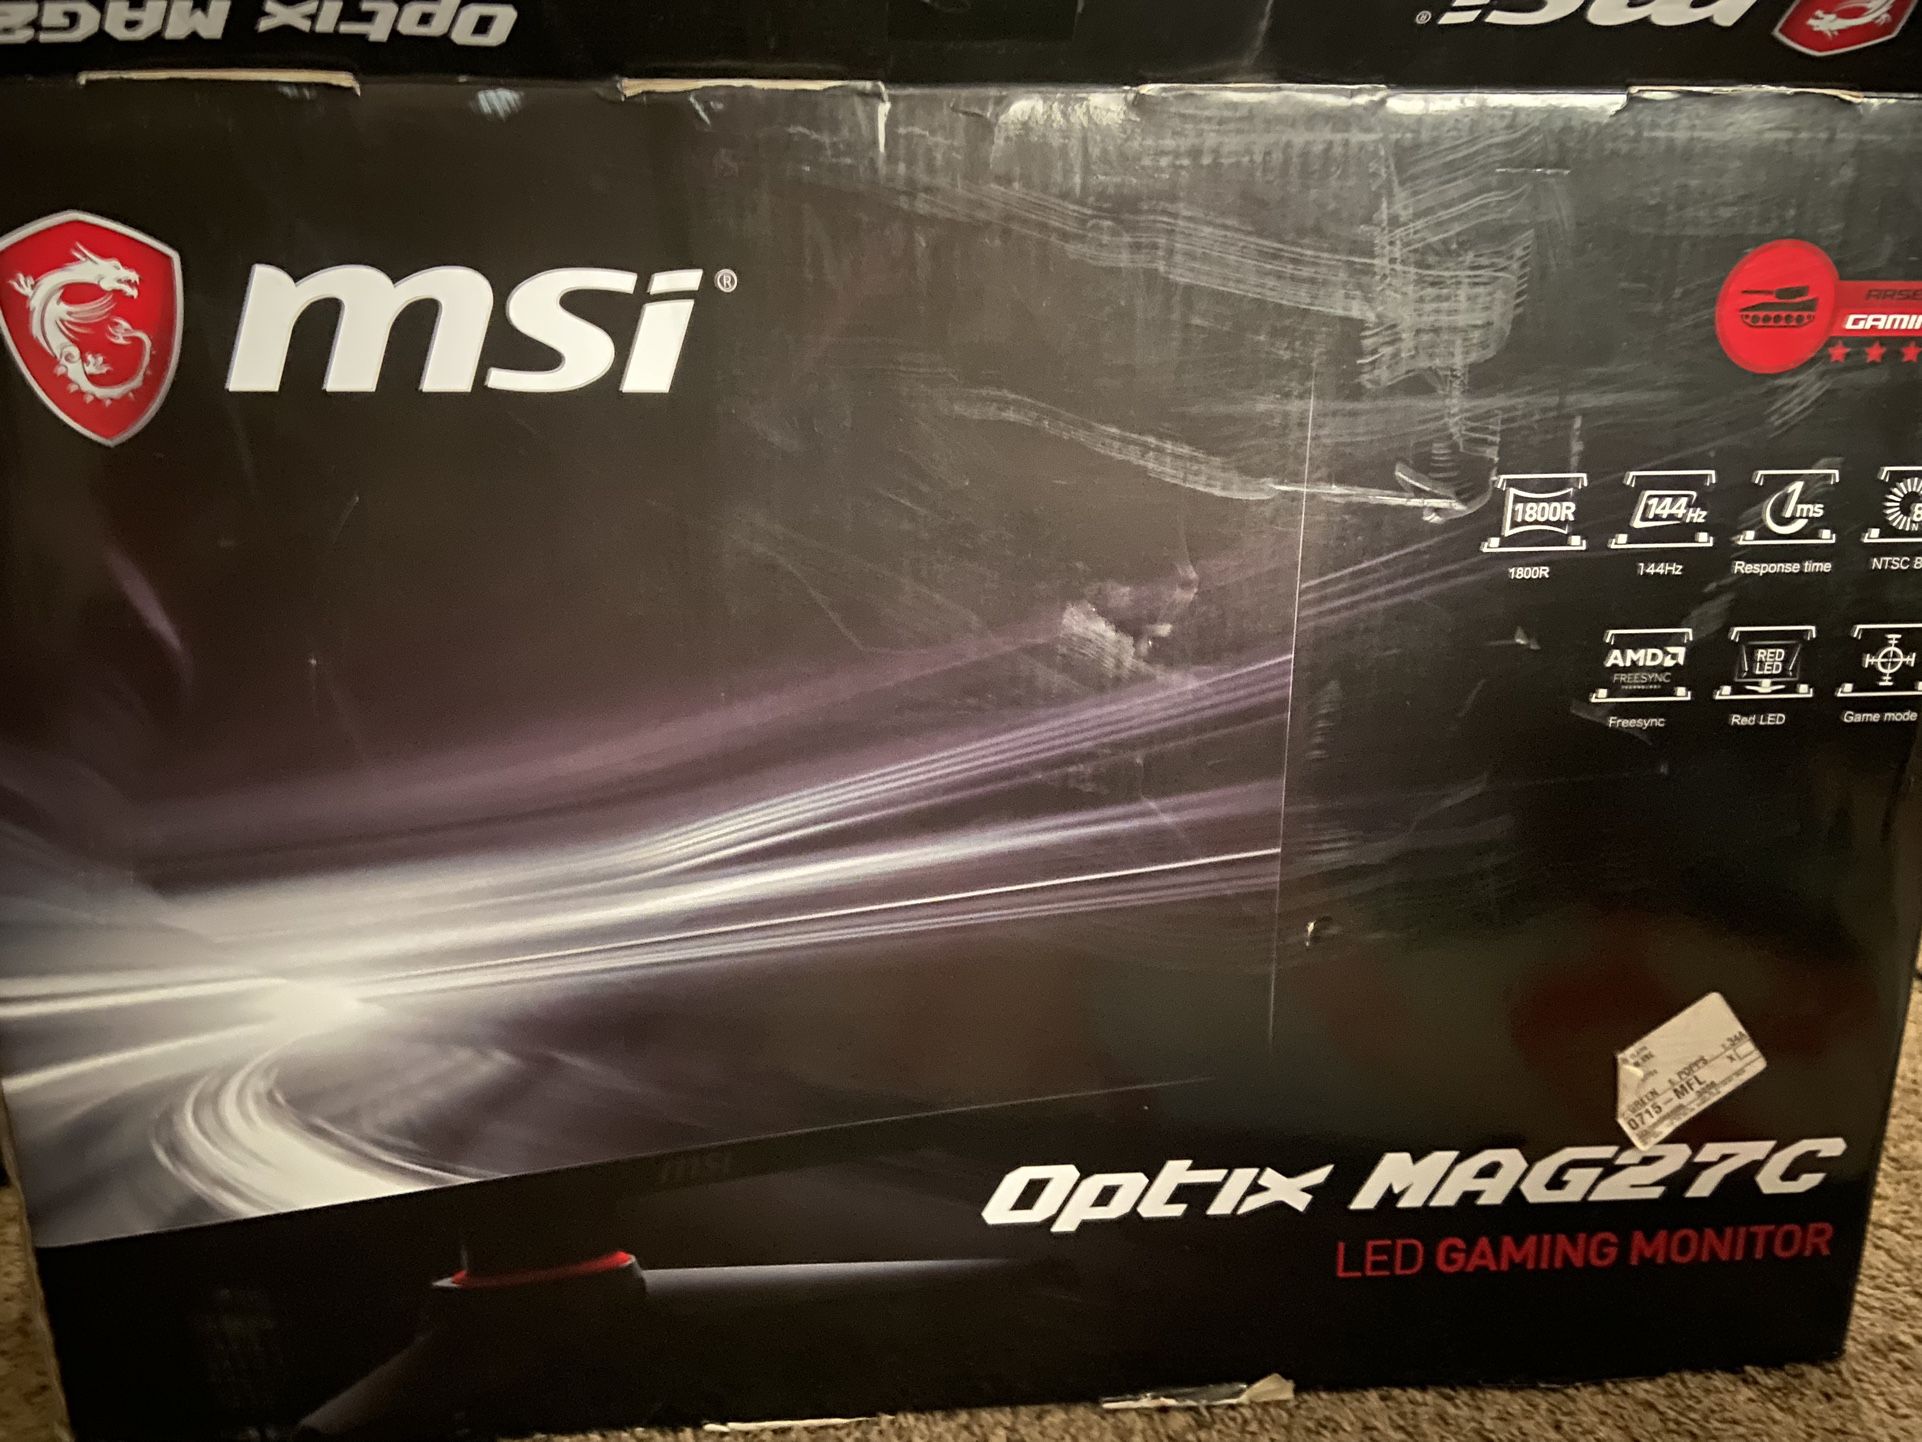 Optix Mag27c LED MSI Gaming Monitor 